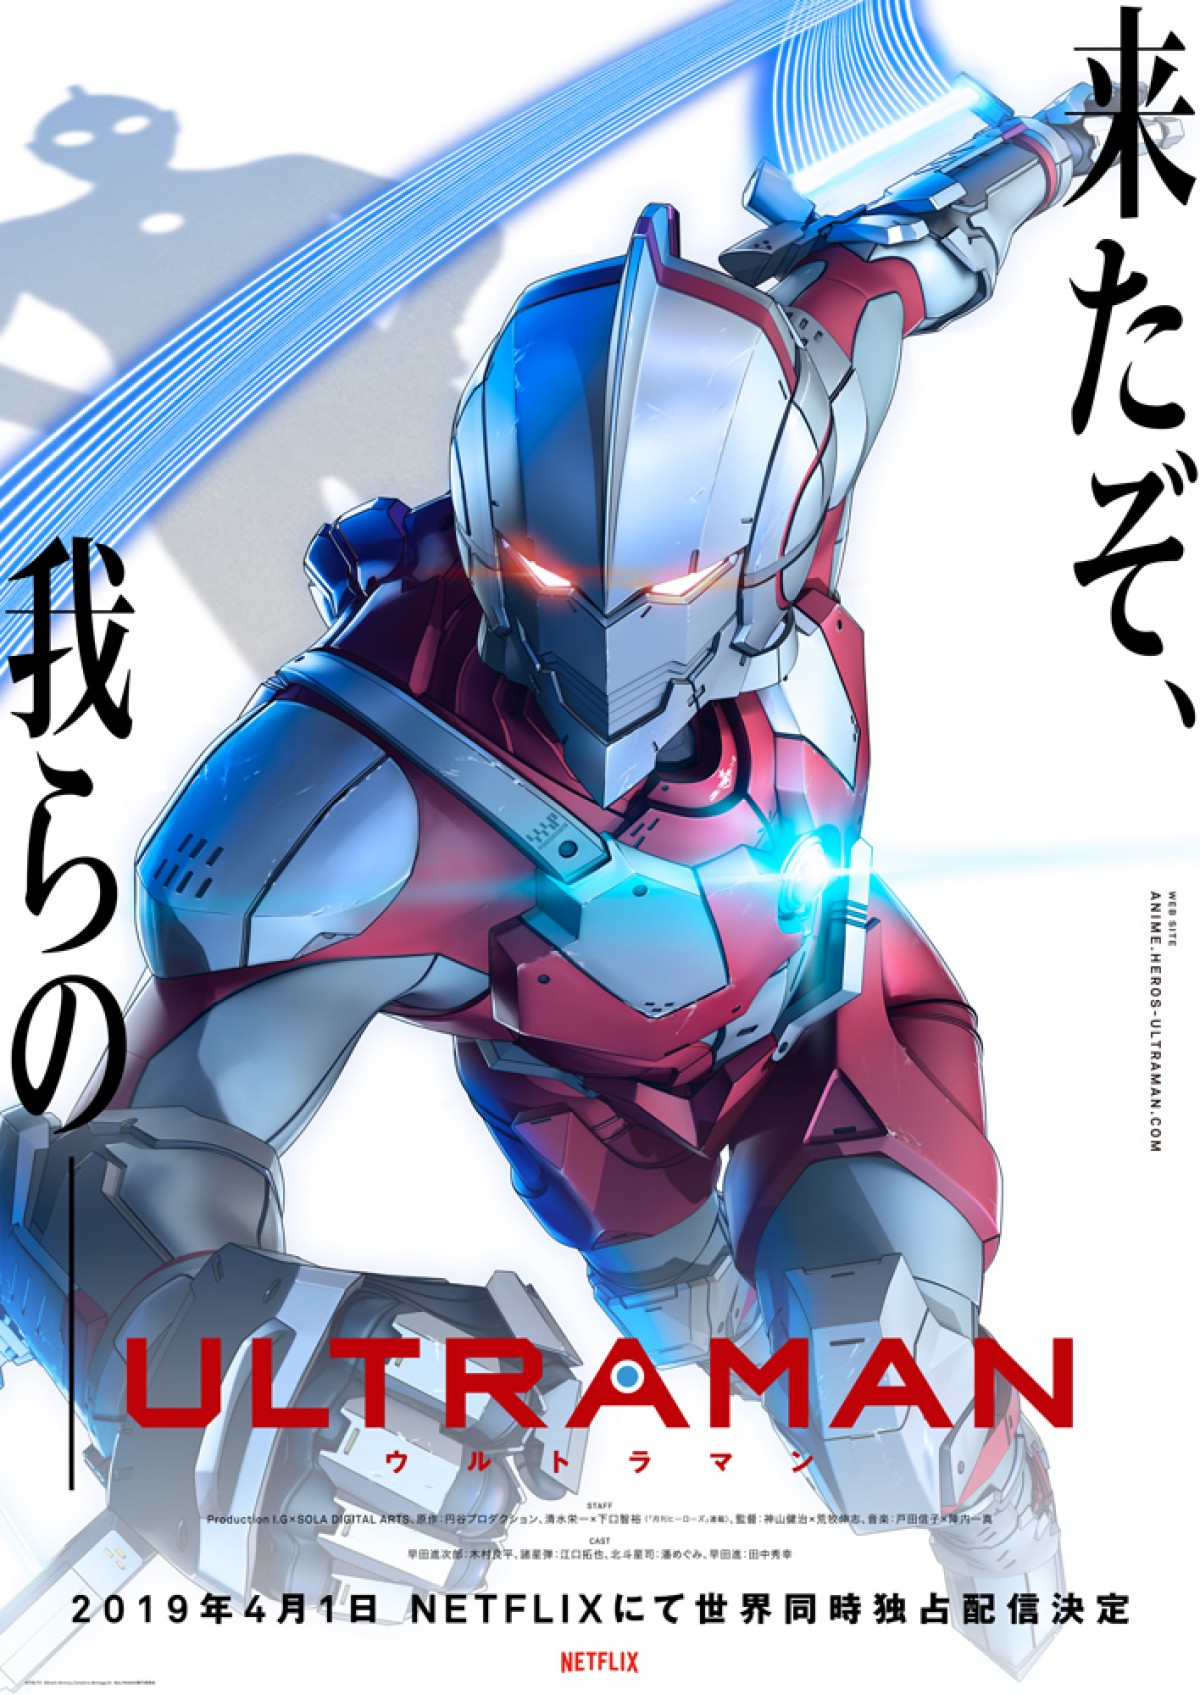 アニメ Ultraman キャスト発表 ヒーロー 異星人の場面写真も公開 19年2月7日 アニメ ニュース クランクイン